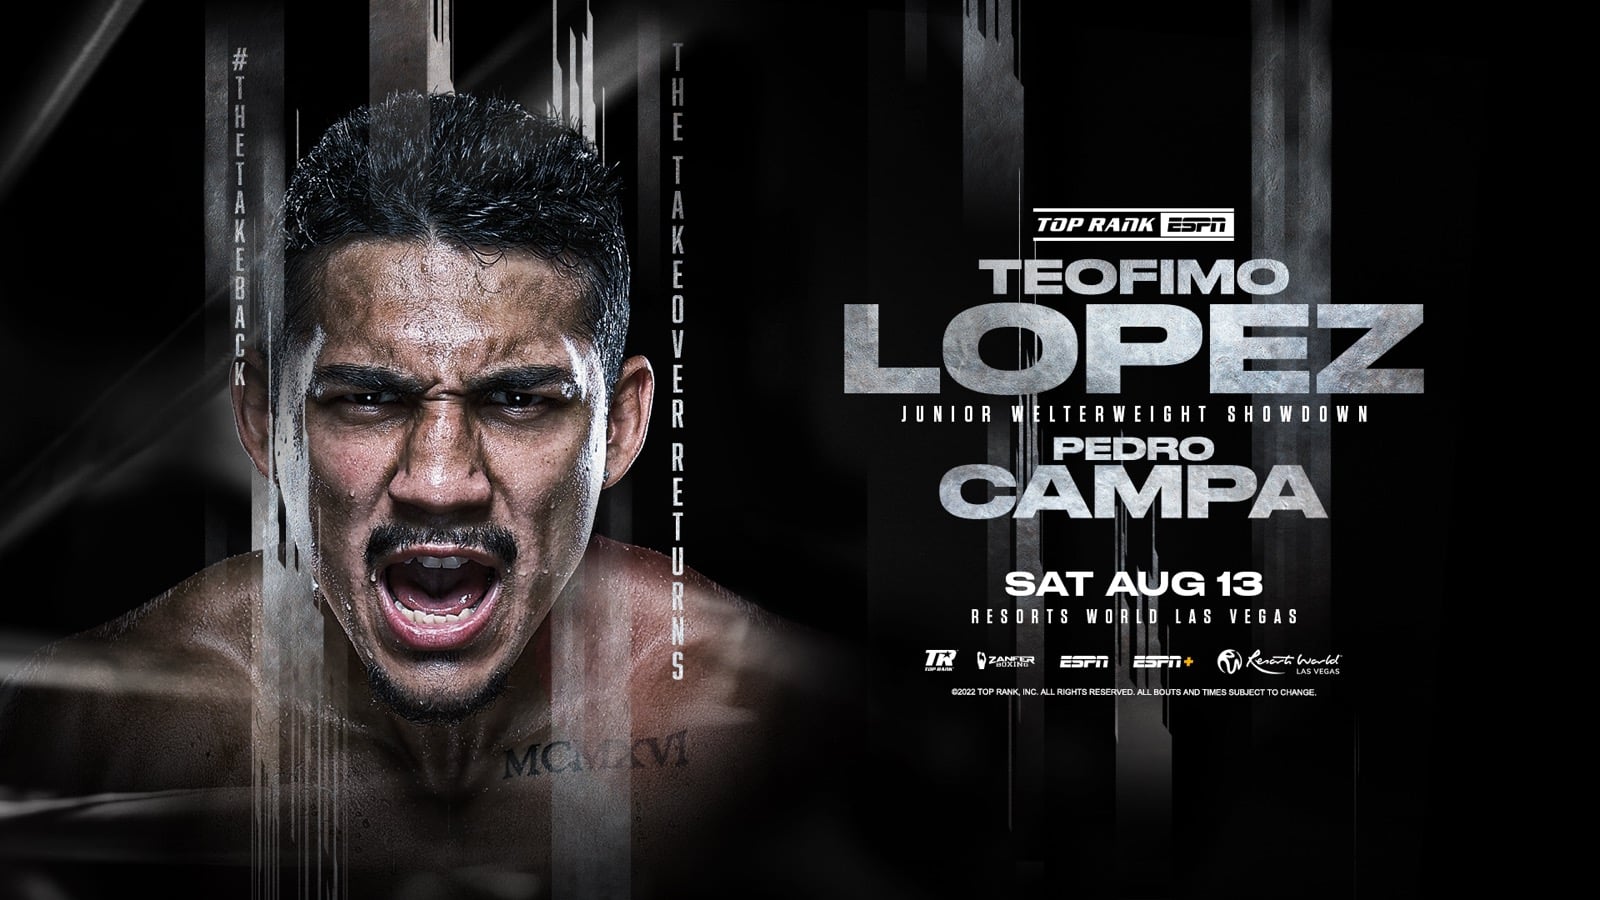 Teofimo Lopez vs Campa - Sky, FITE, ESPN+ - August 13 - 10 pm ET